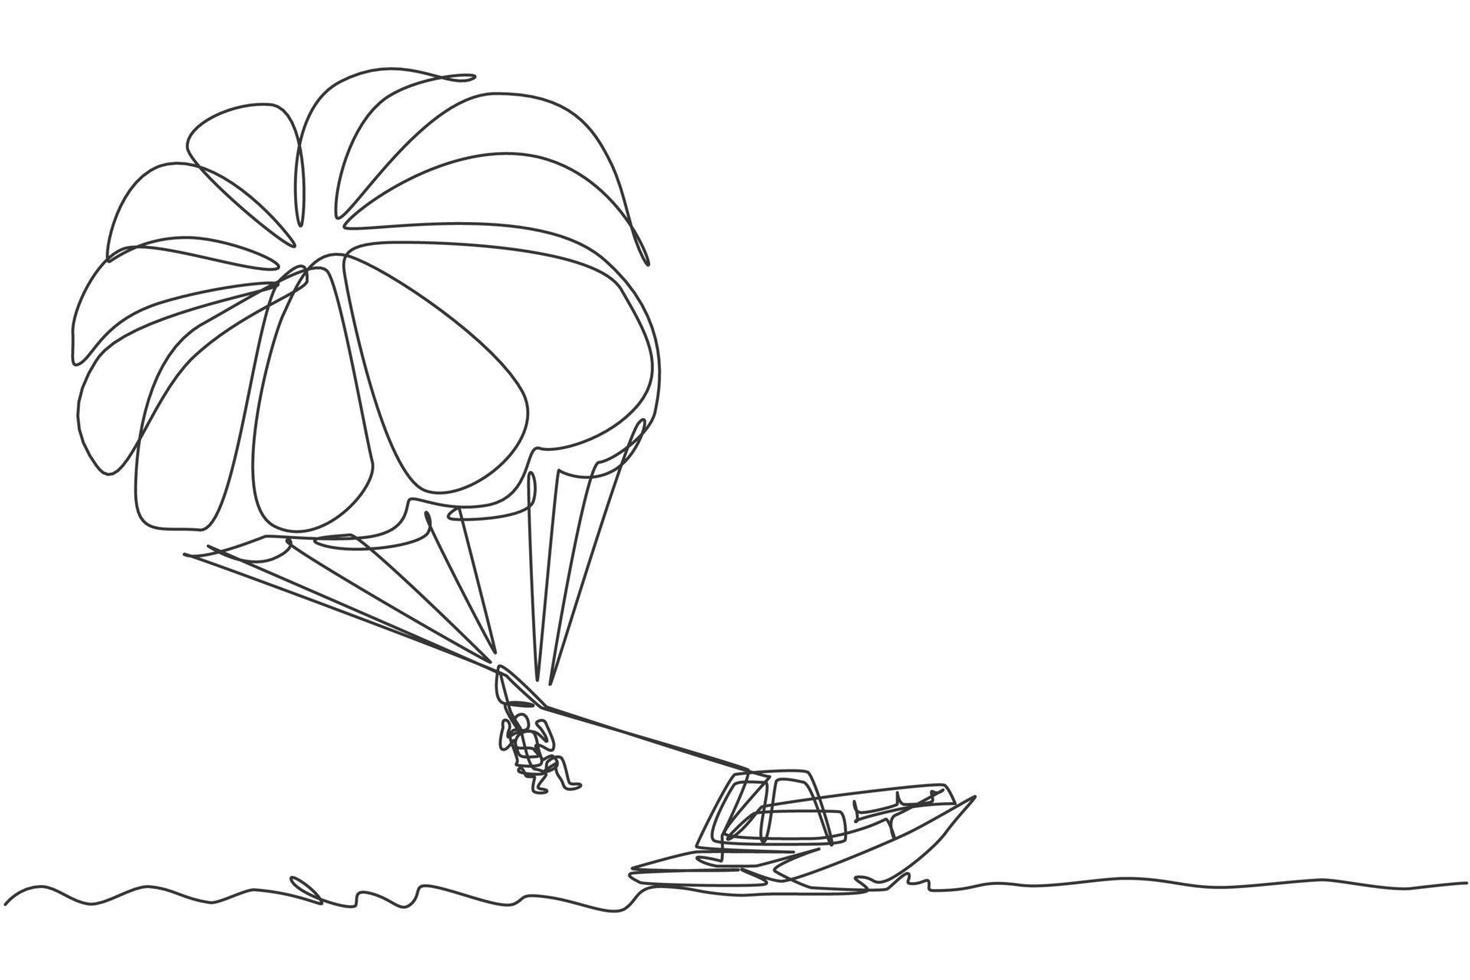 un dibujo de línea continua de valentía joven volando en el cielo usando paracaídas detrás del barco. concepto de deporte extremo peligroso al aire libre. Ilustración de vector de diseño de dibujo de línea única dinámica